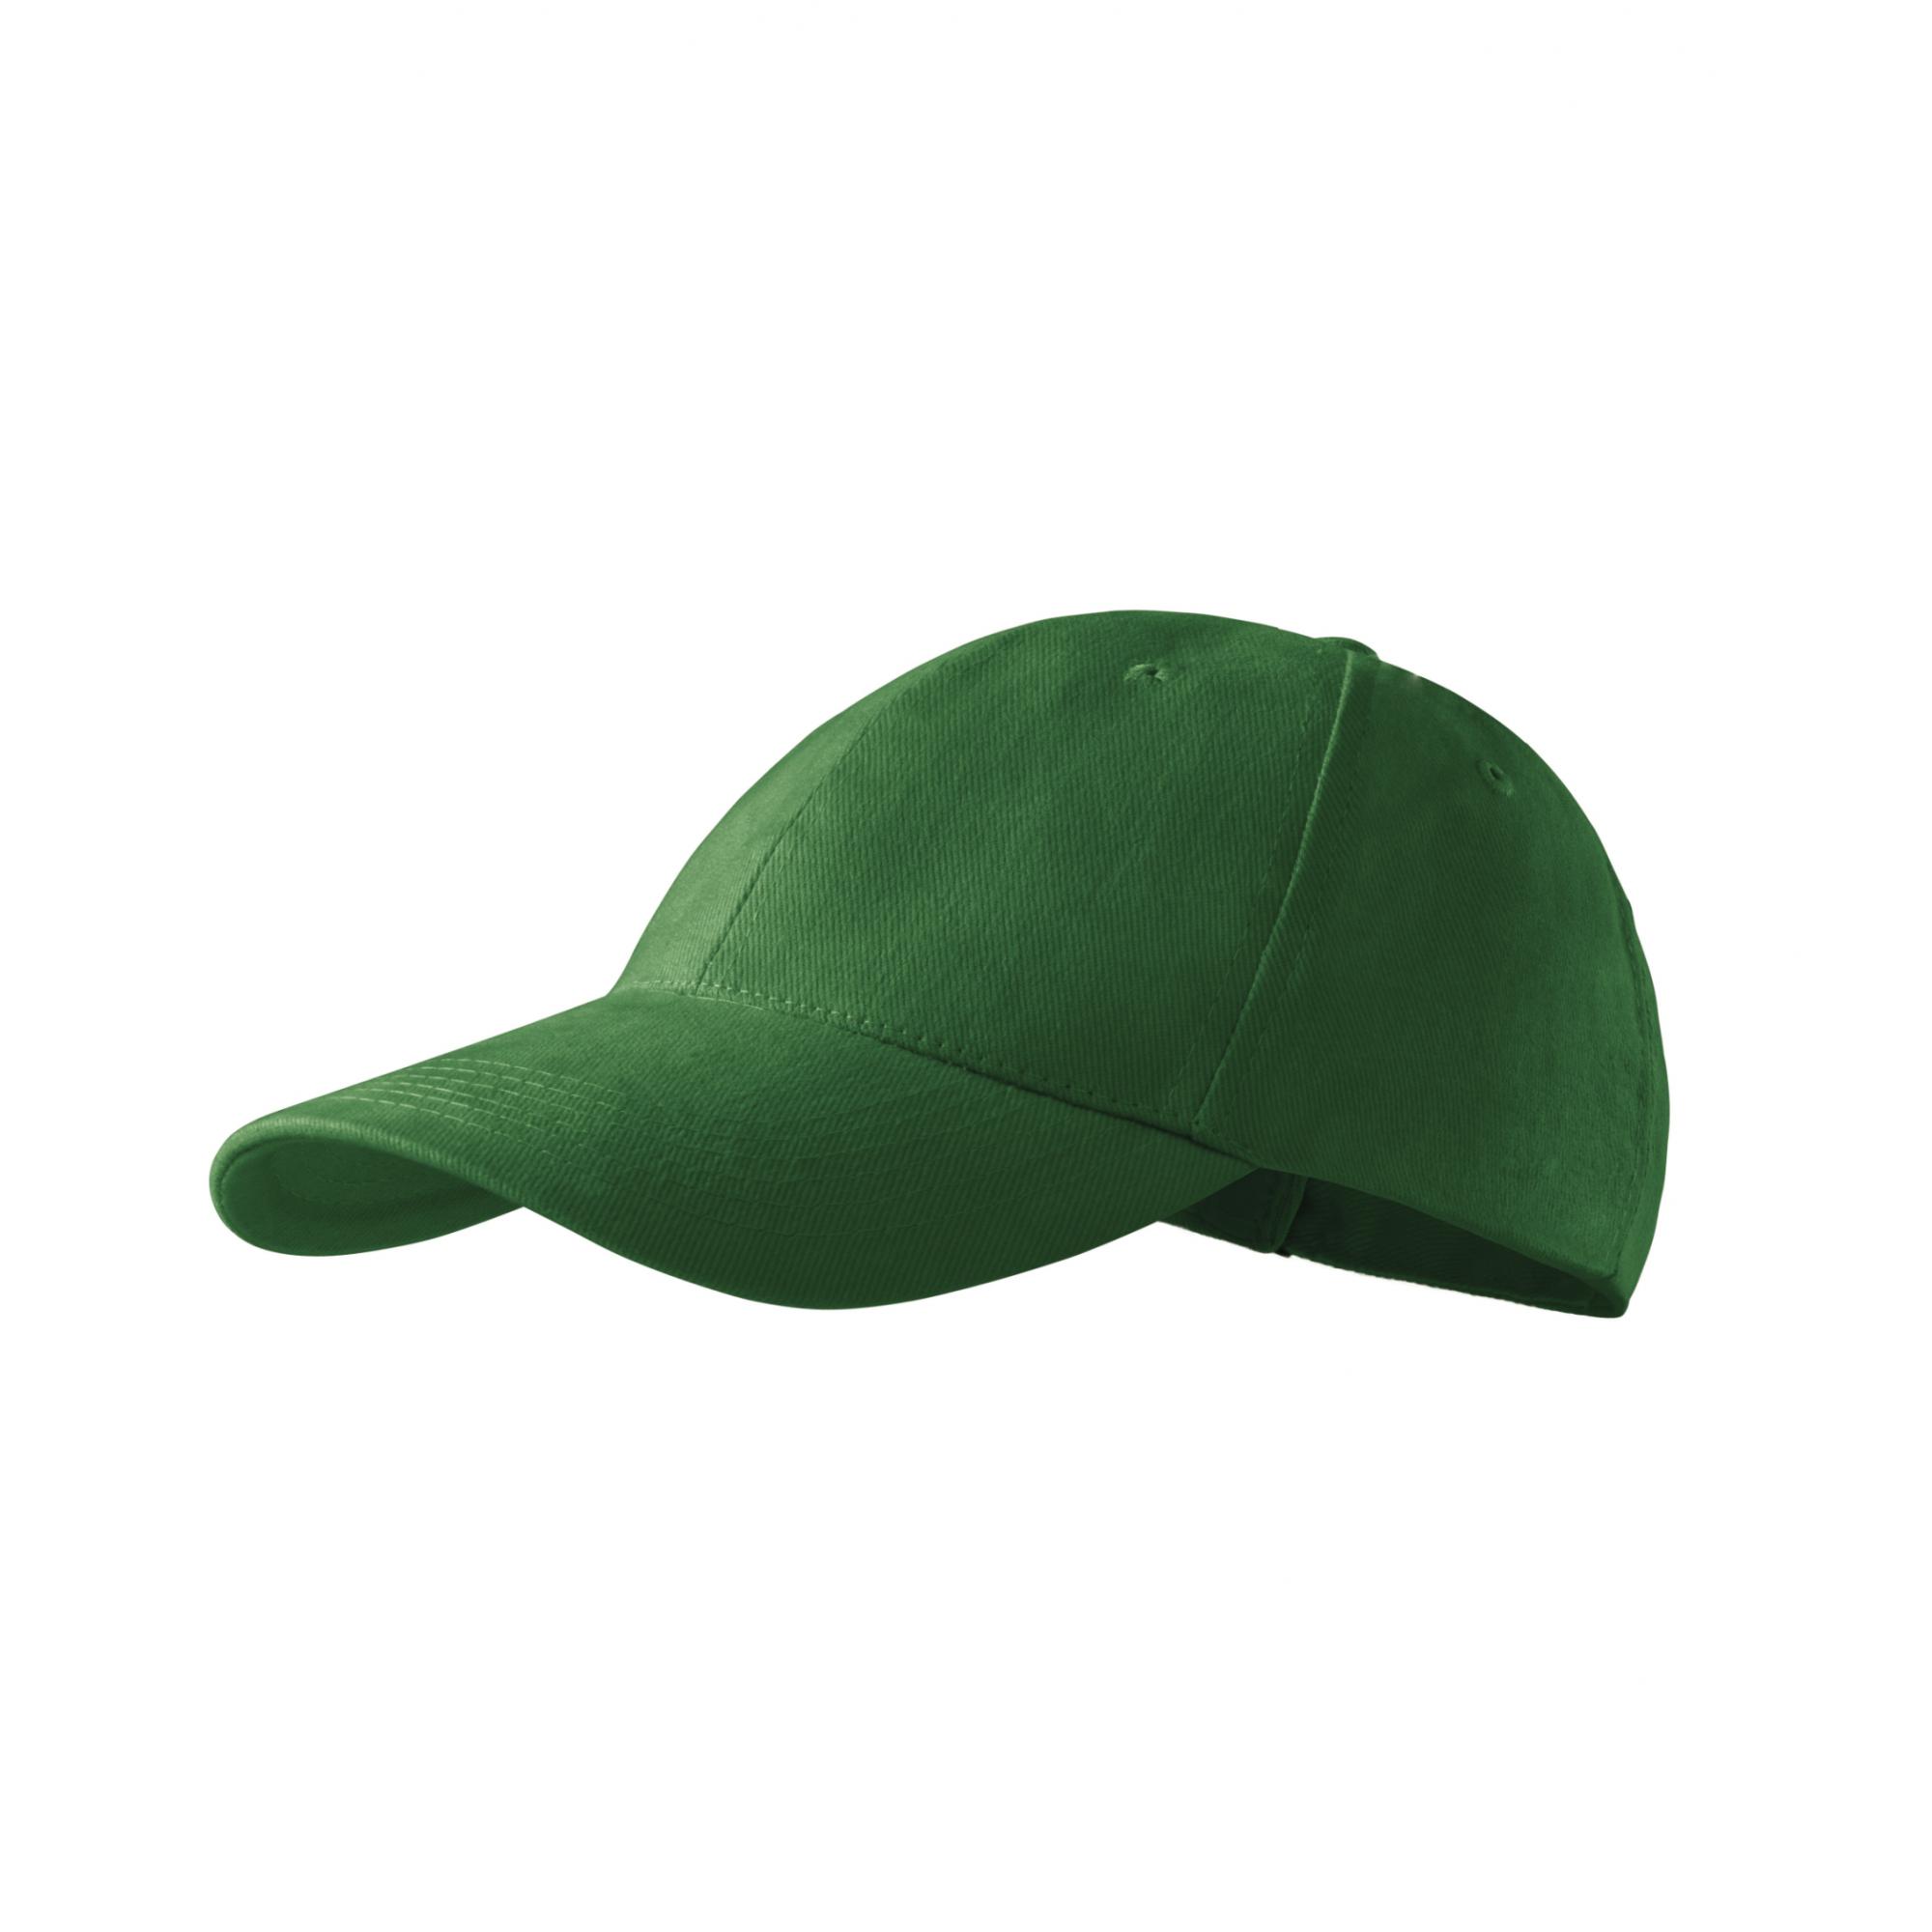 Şapcă unisex 6P 305 Verde sticla